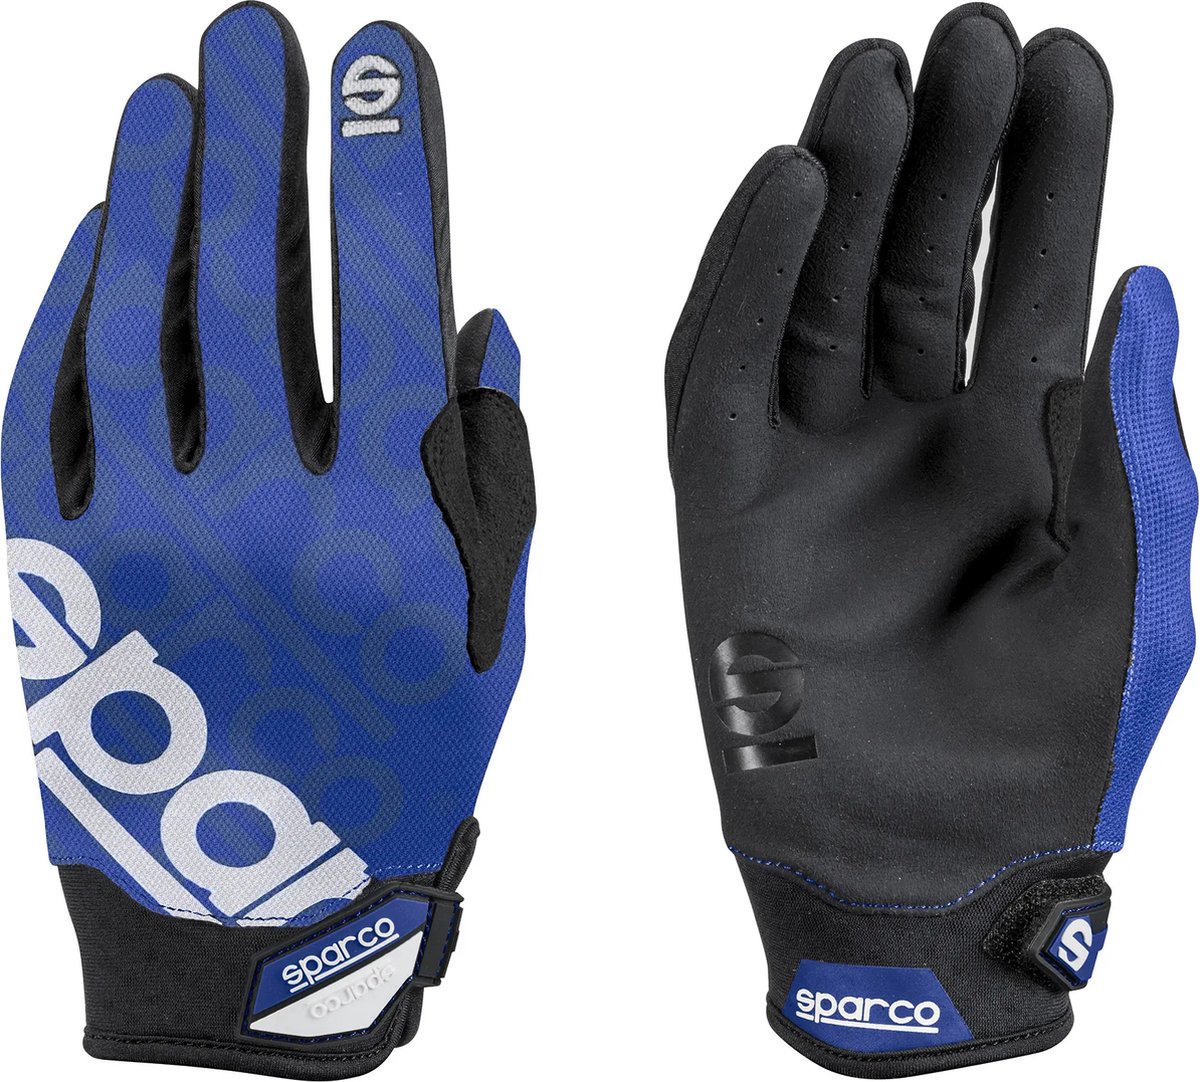 Sparco MECA-3 Handschoenen - Handschoenen voor Optimaal Comfort - Blauw/Wit - Maat S